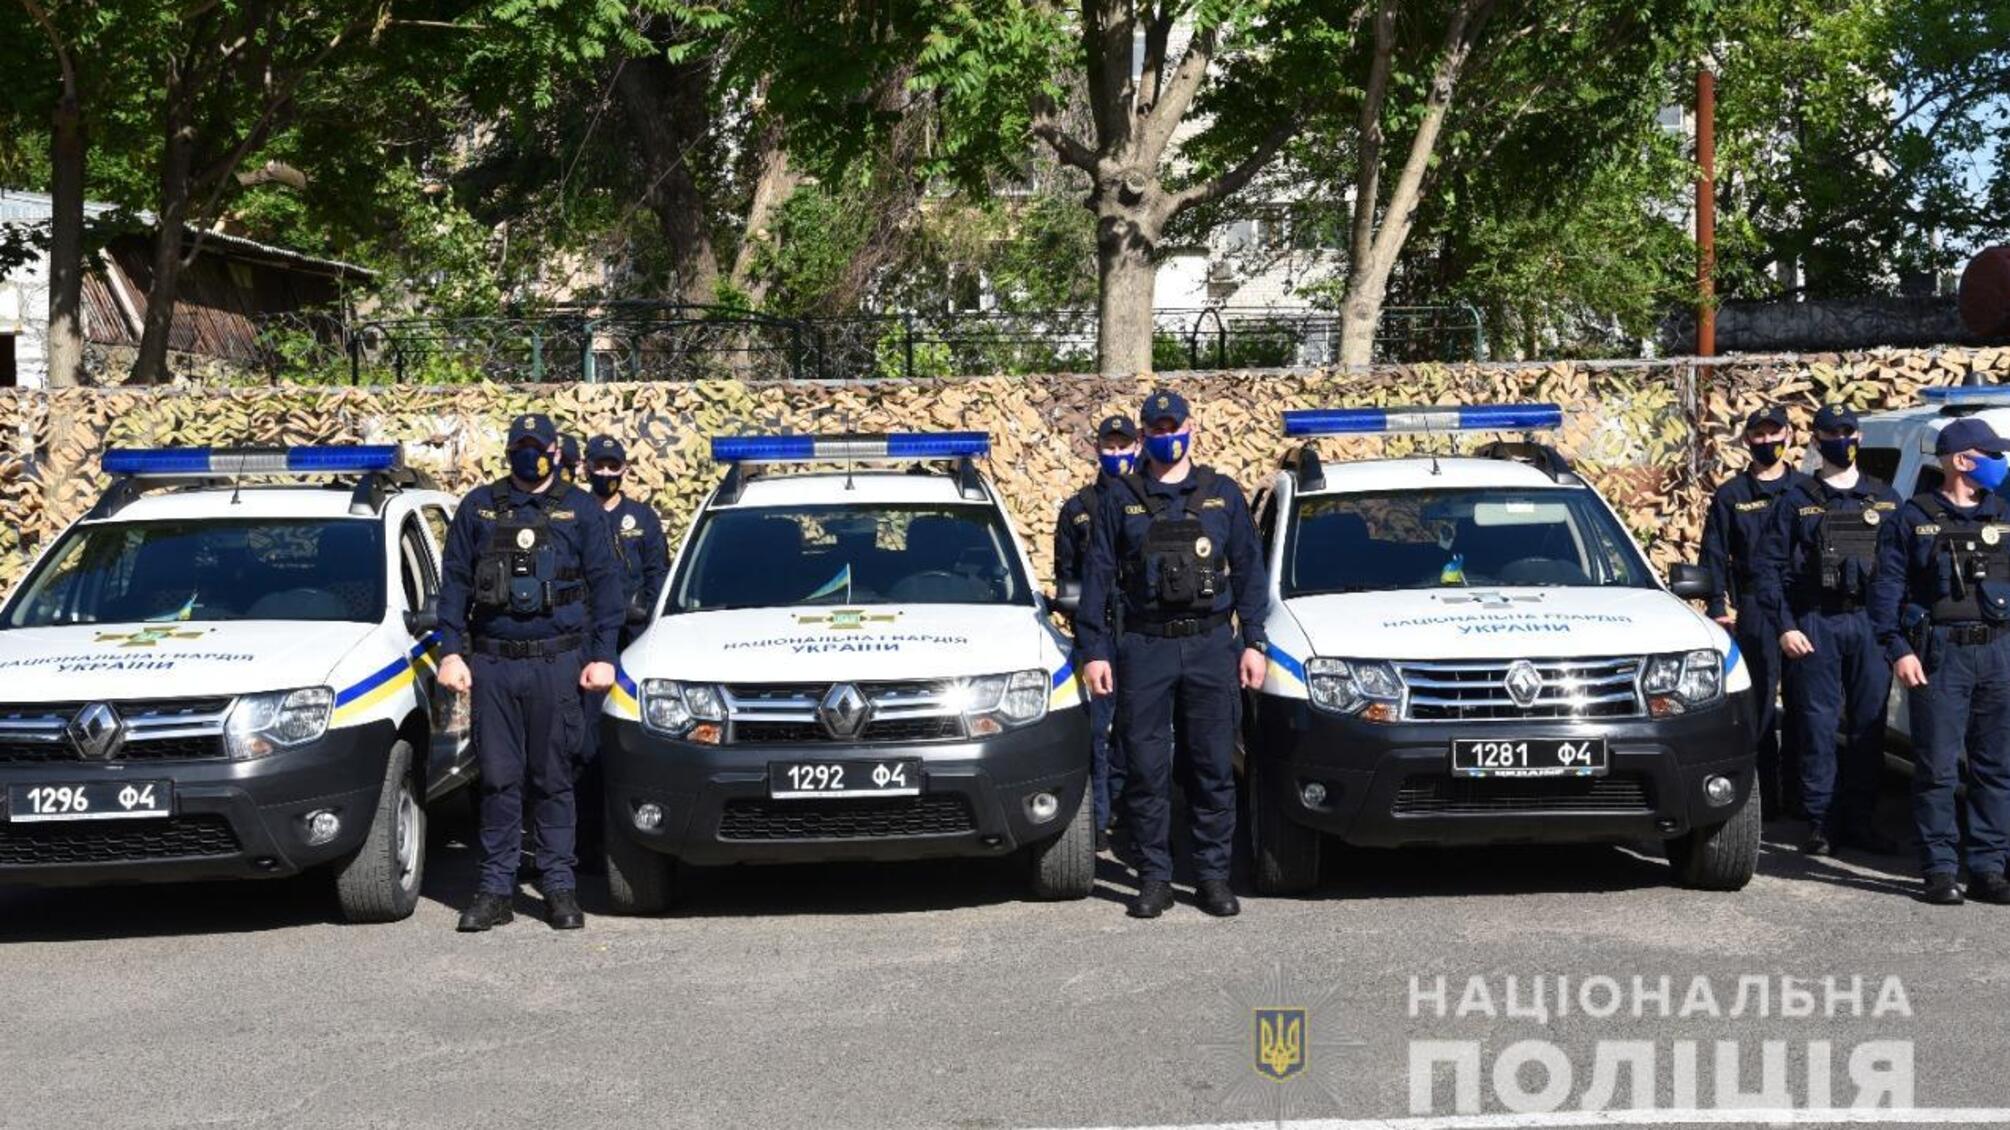 Правоохоронці Одещини готові до забезпечення публічного порядку та безпеки людей під час курортного сезону